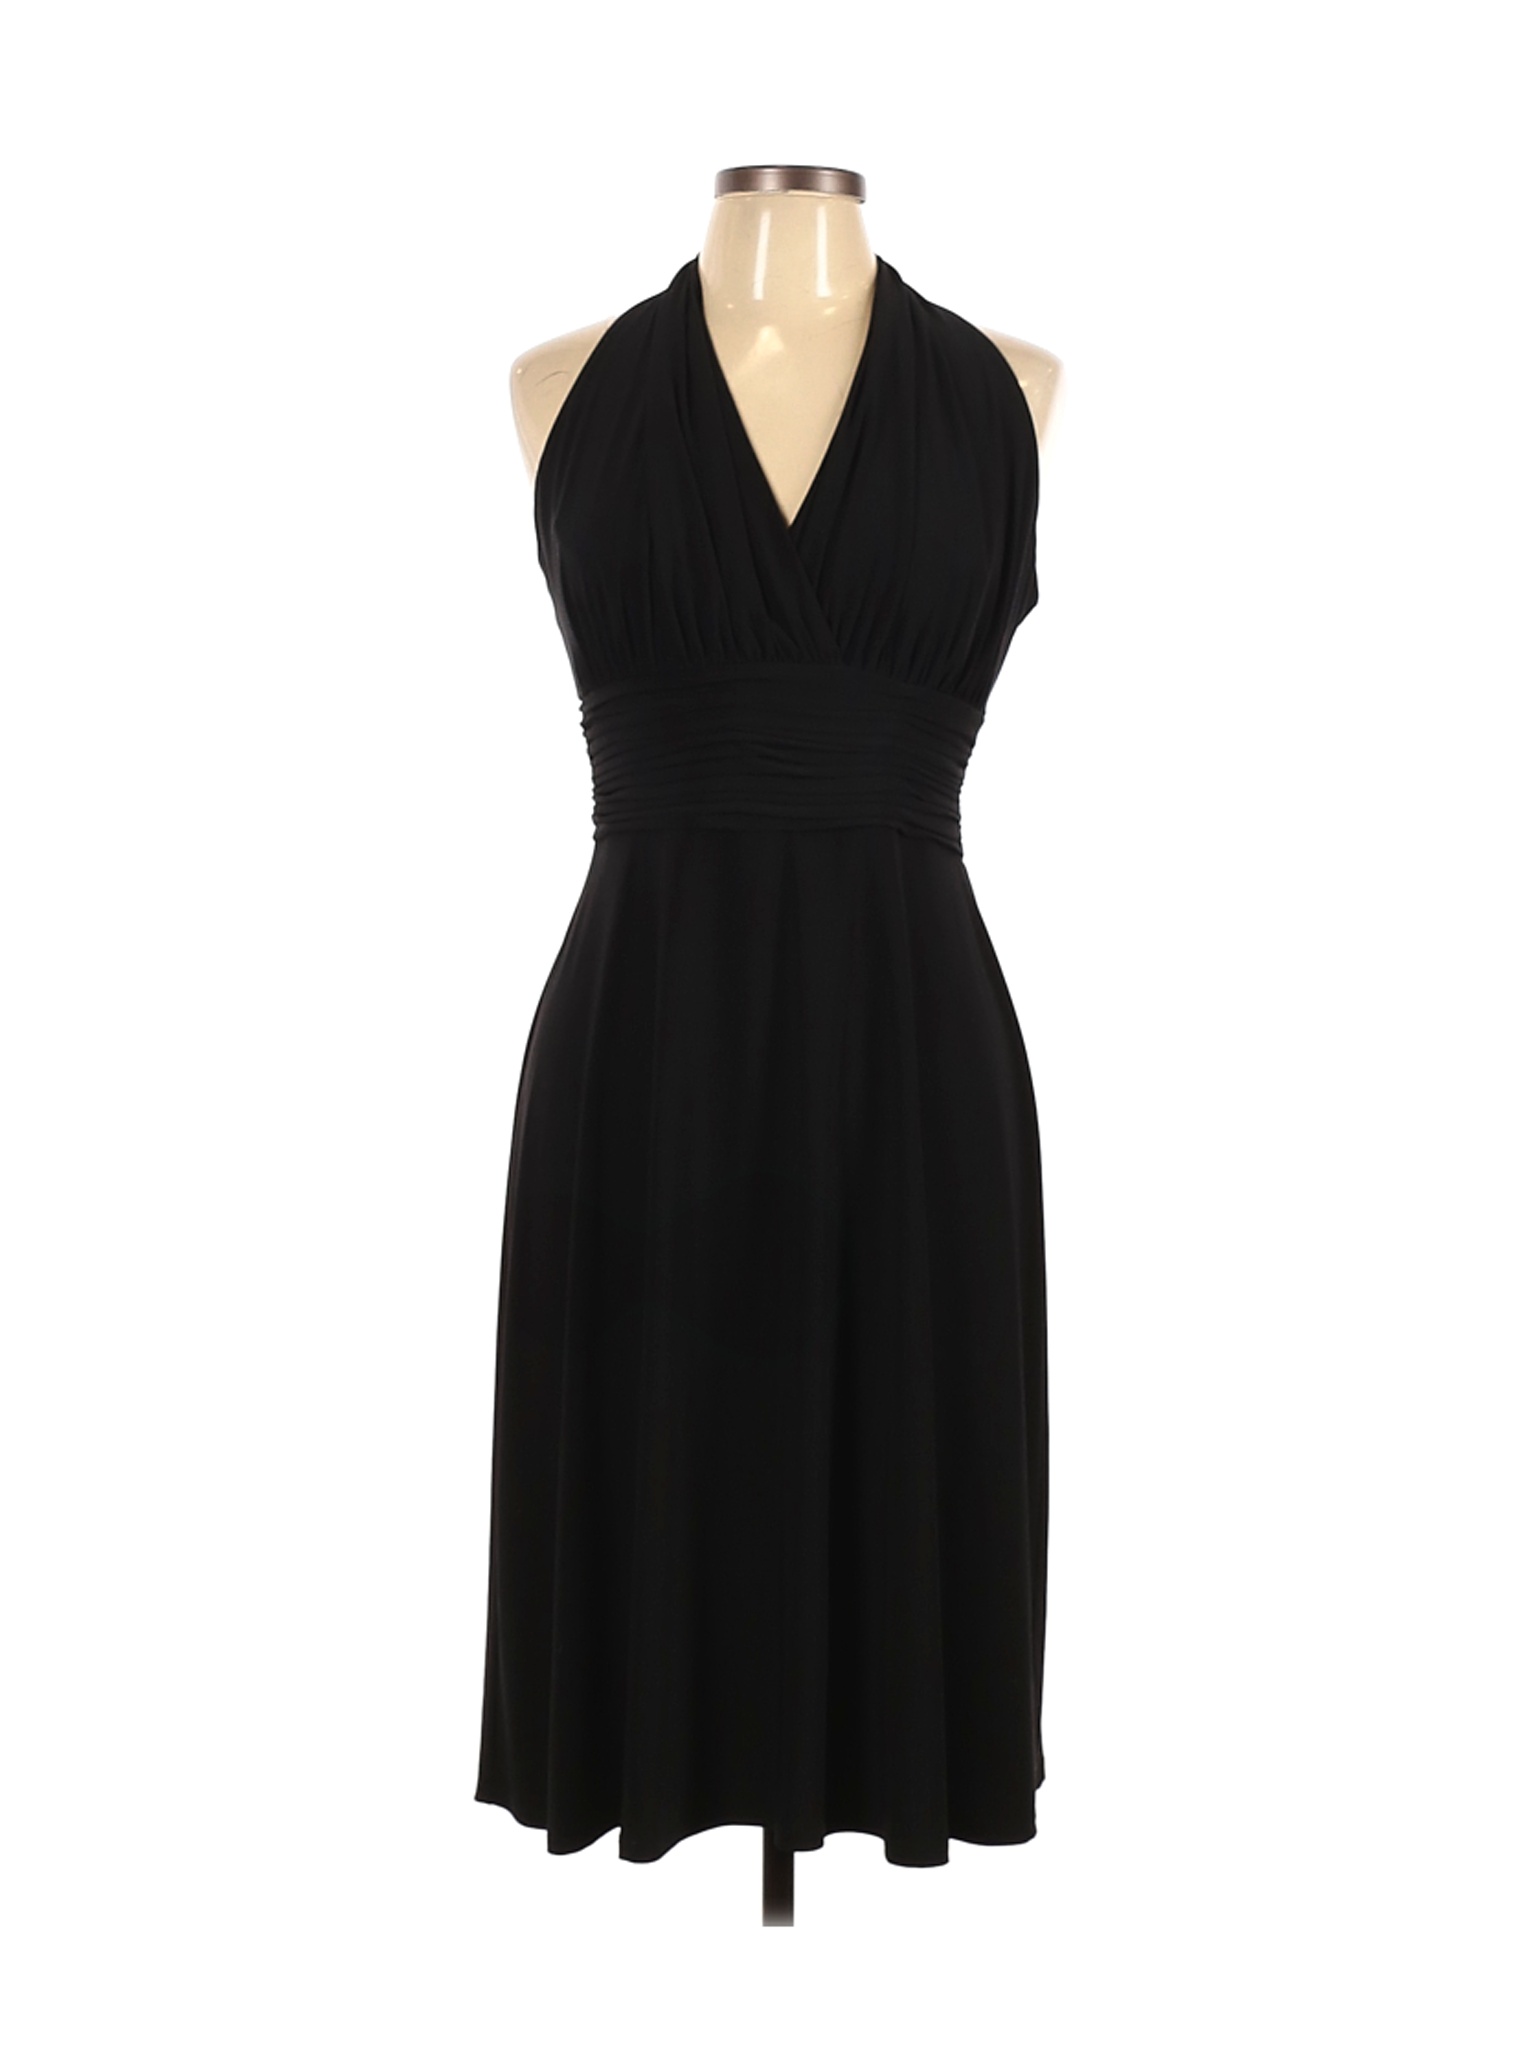 Jones Wear Women Black Cocktail Dress 10 | eBay